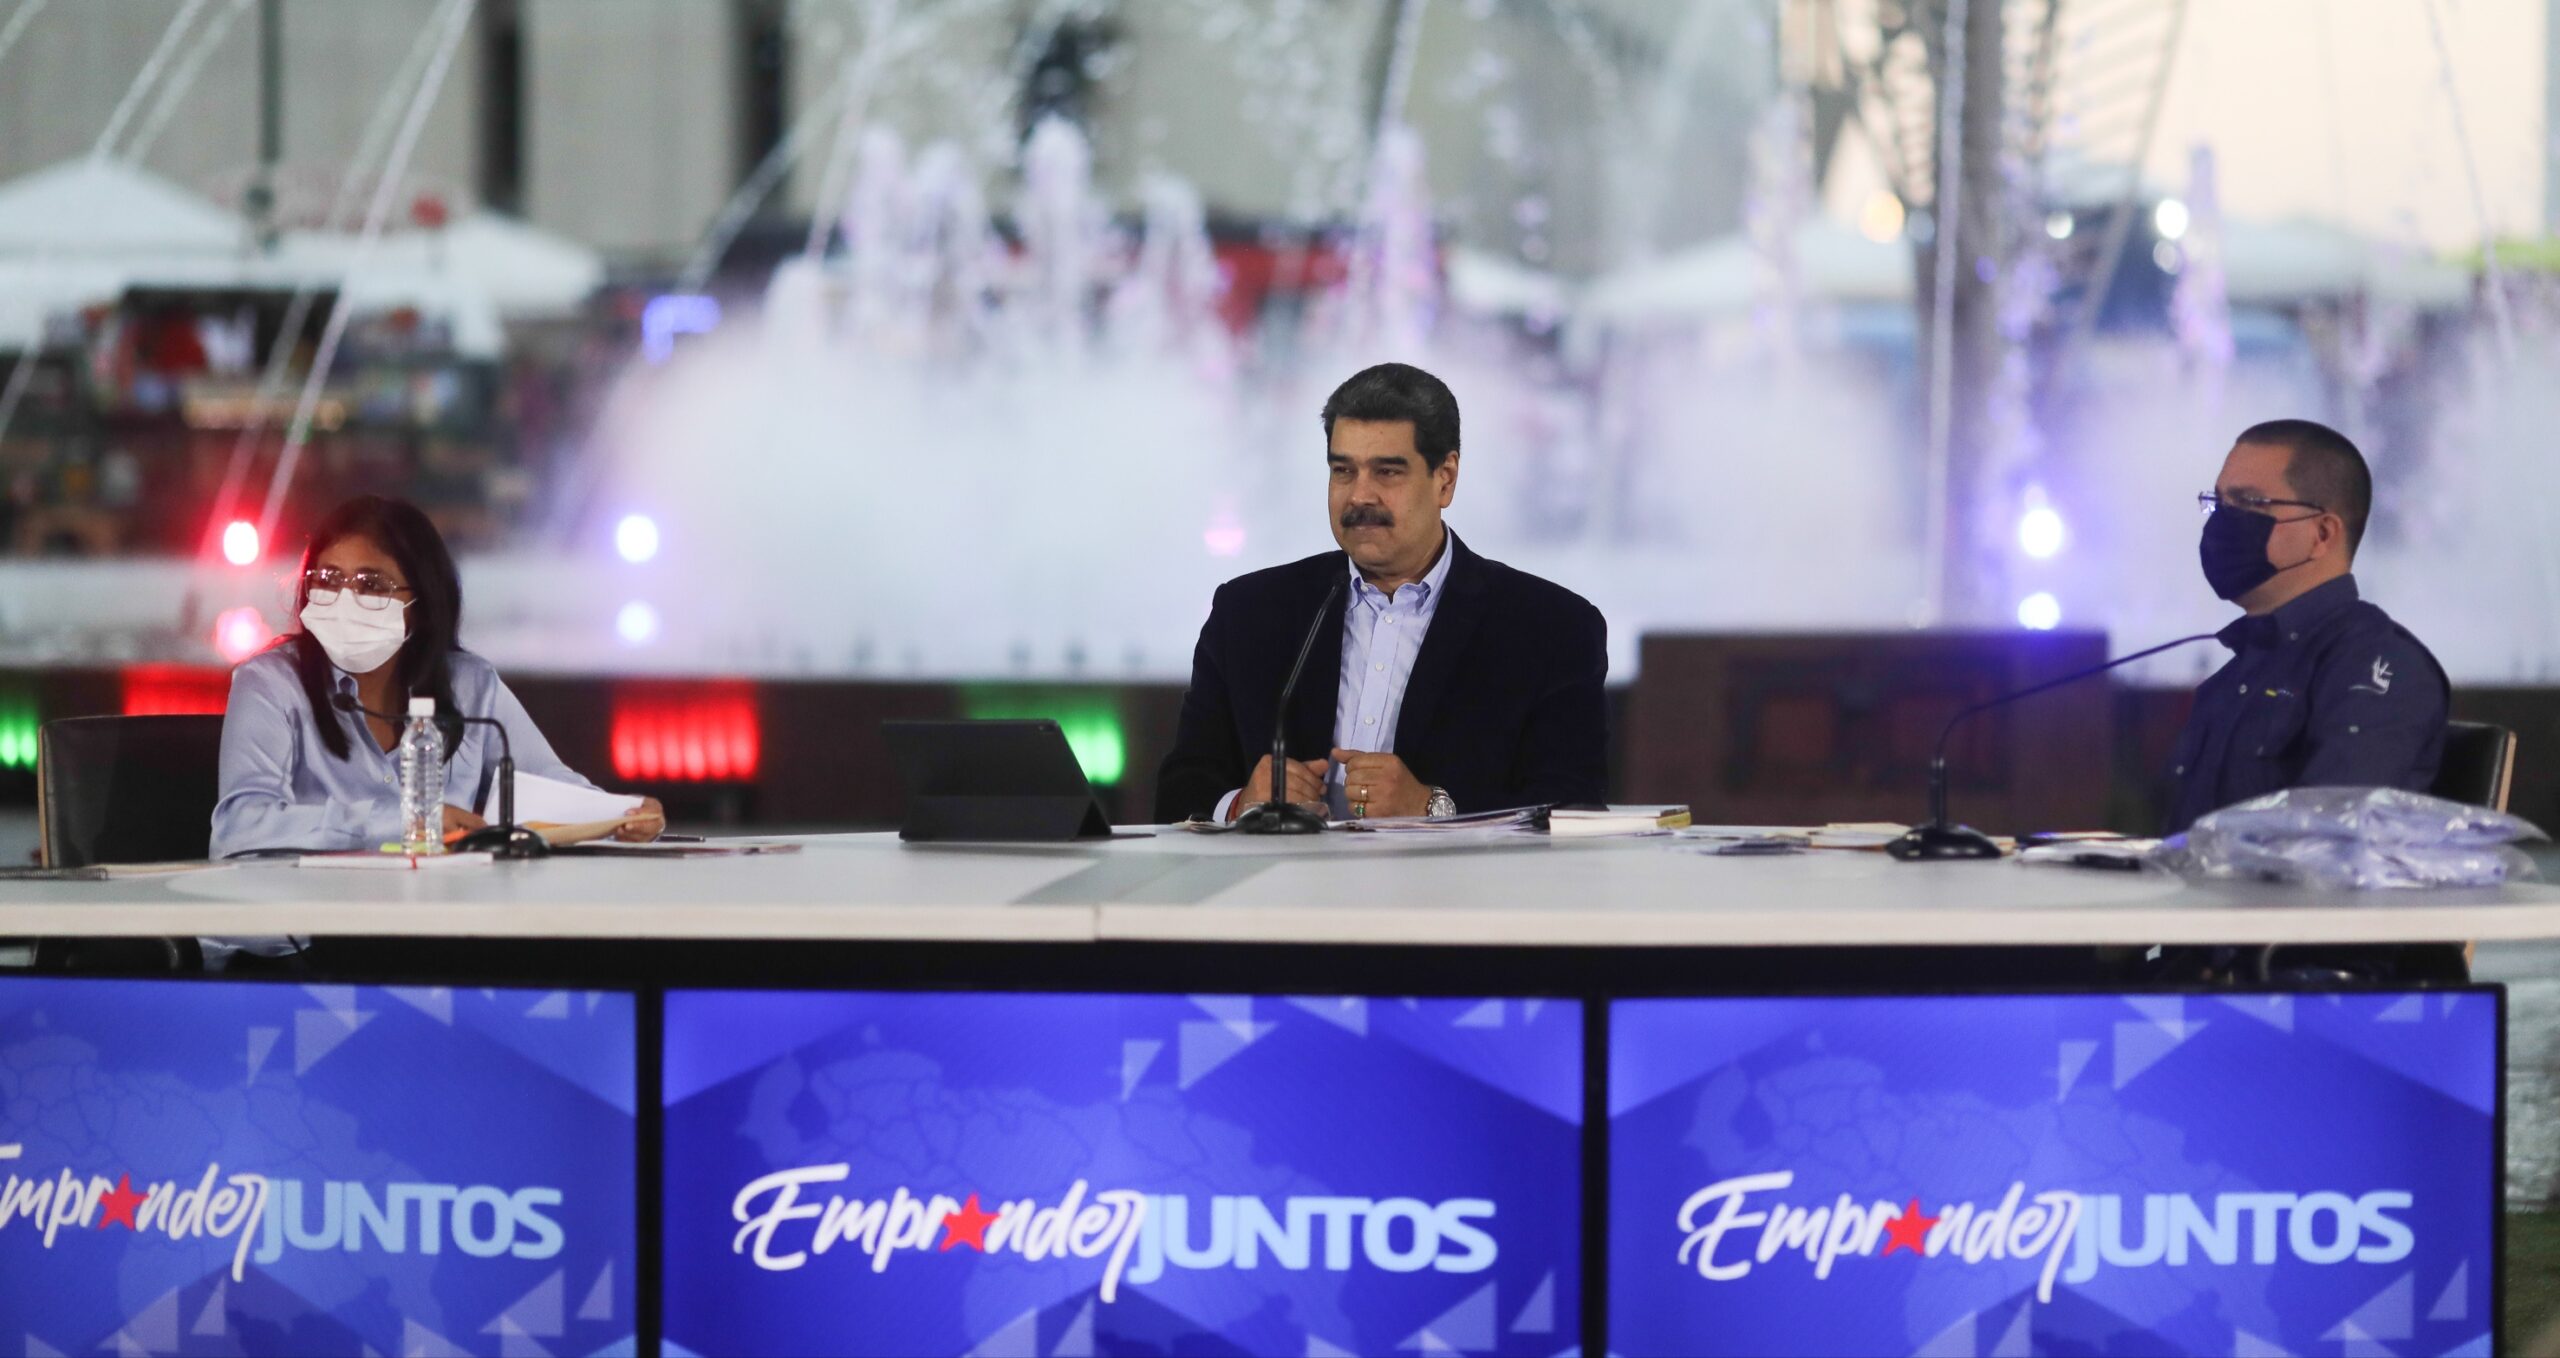 Presidente Maduro instruye incrementar vuelos del Plan Vuelta a la Patria